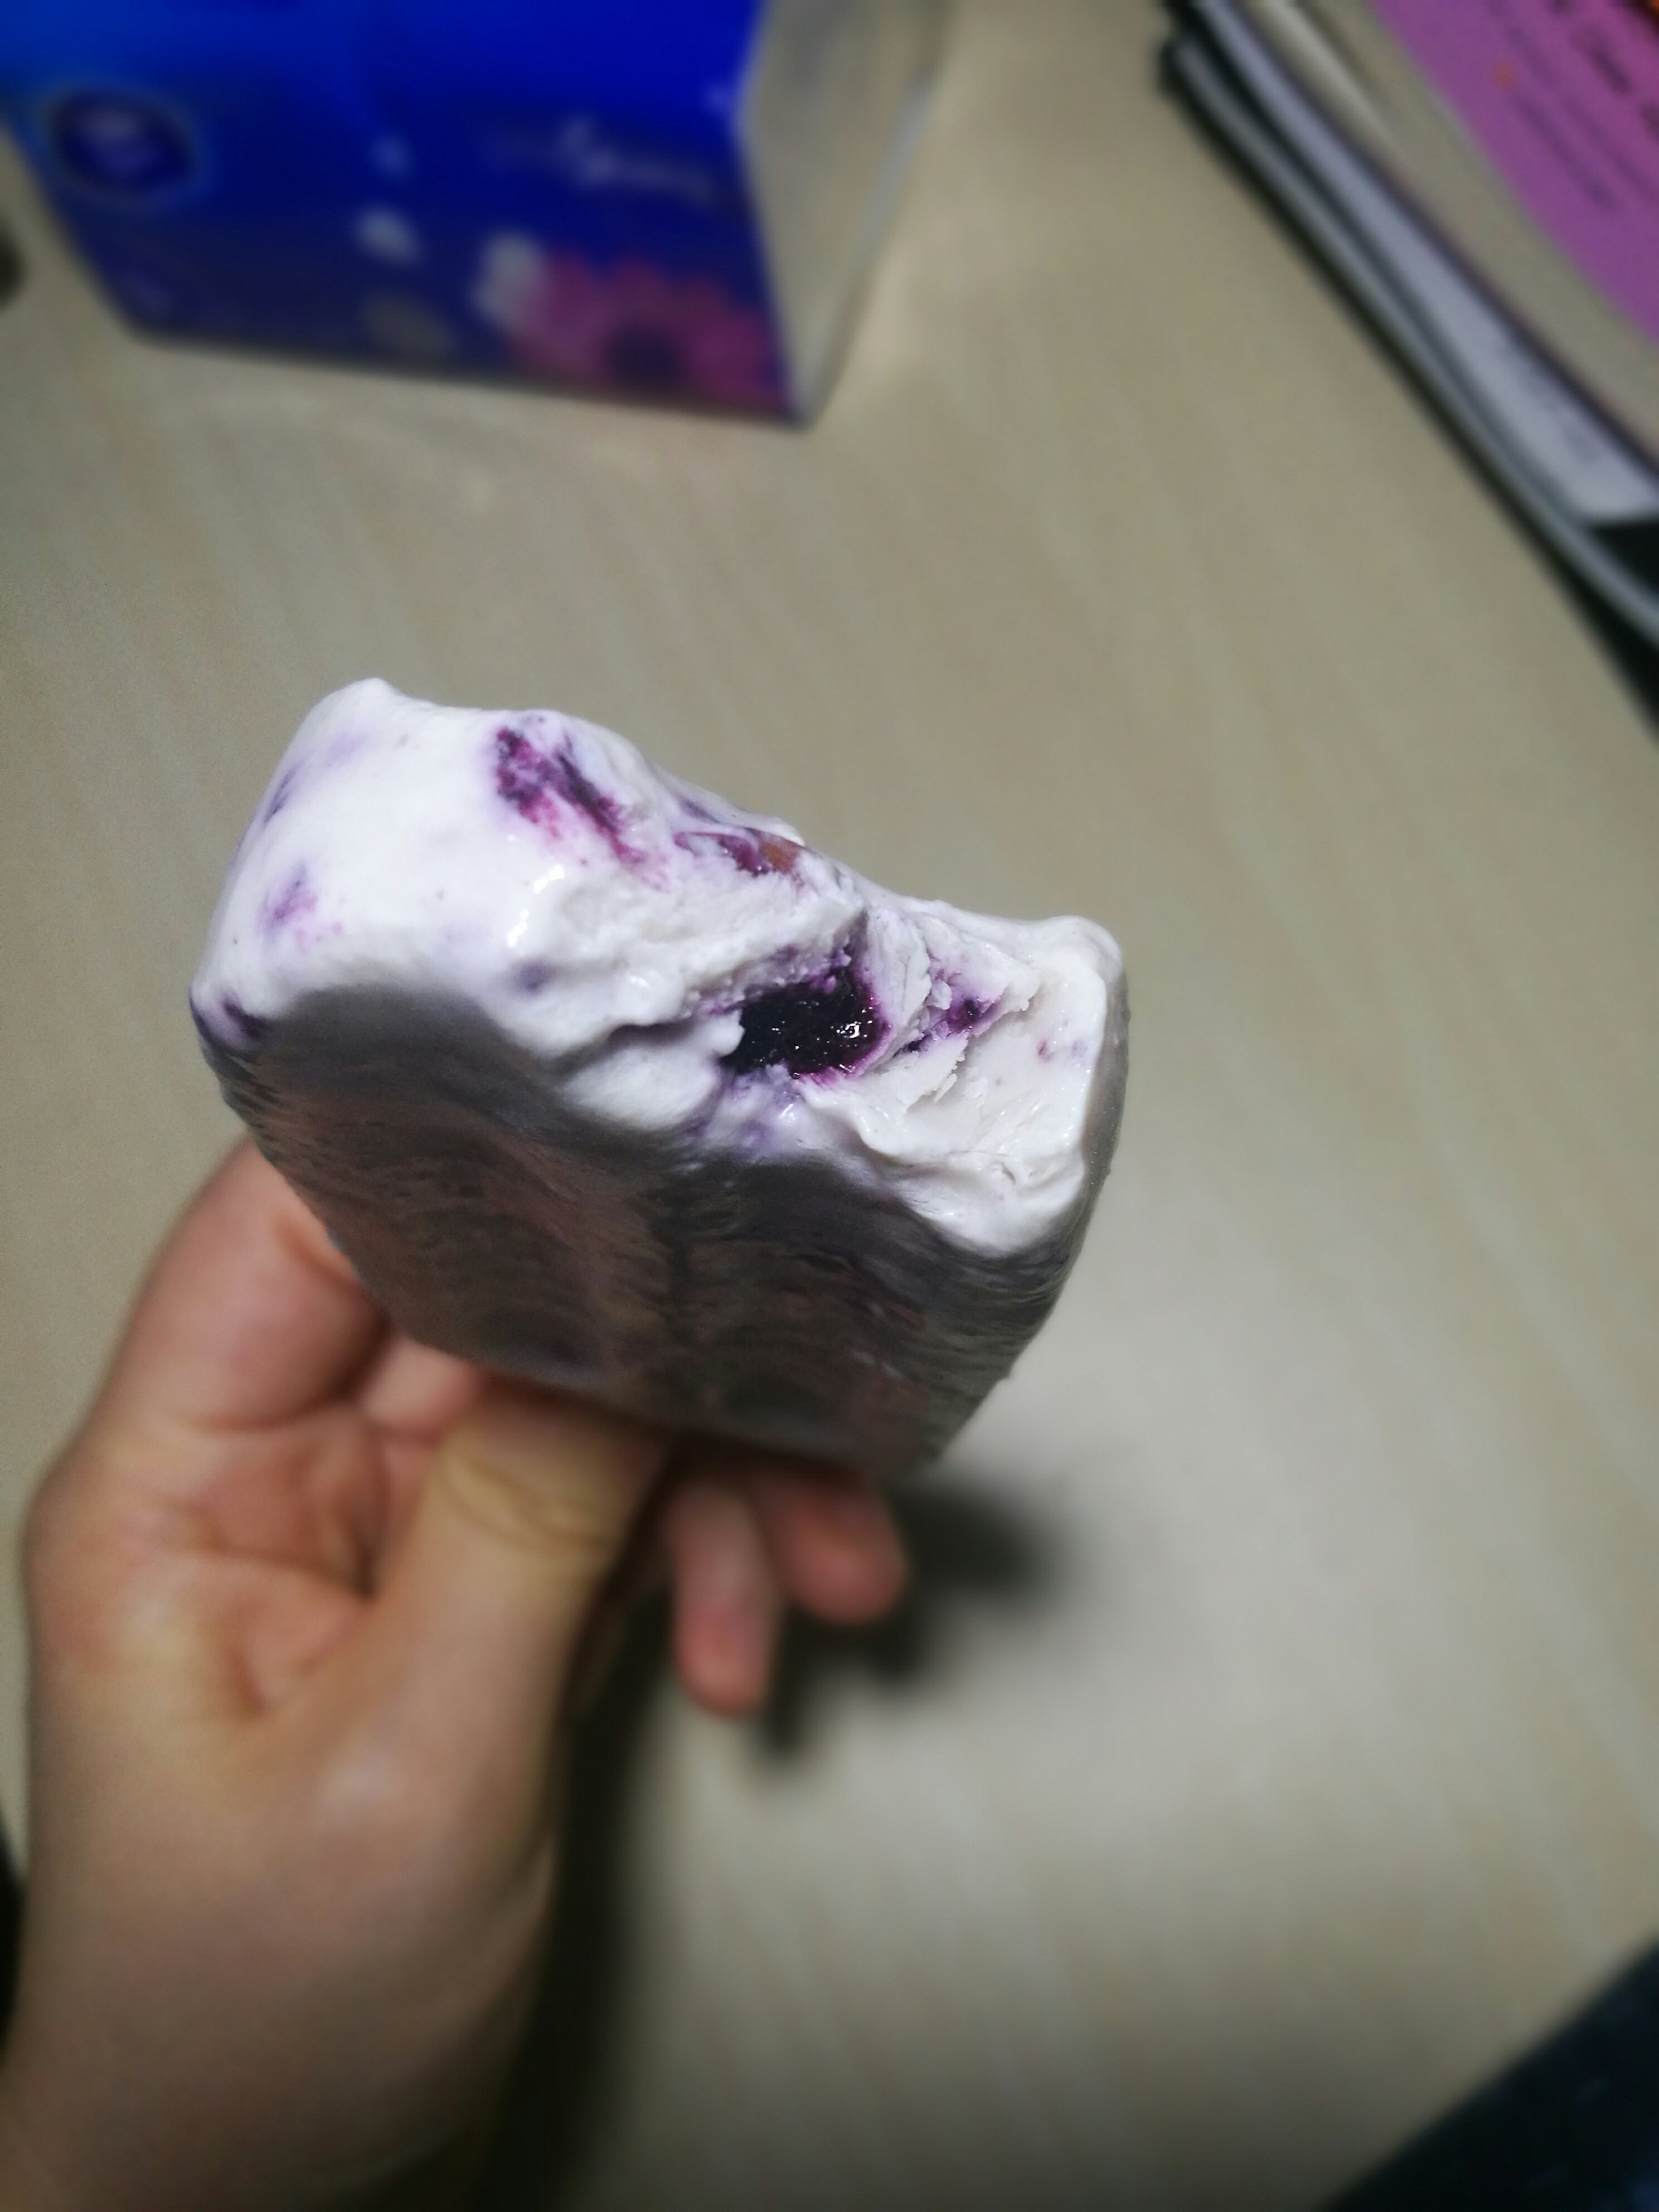 蓝莓酸奶雪糕